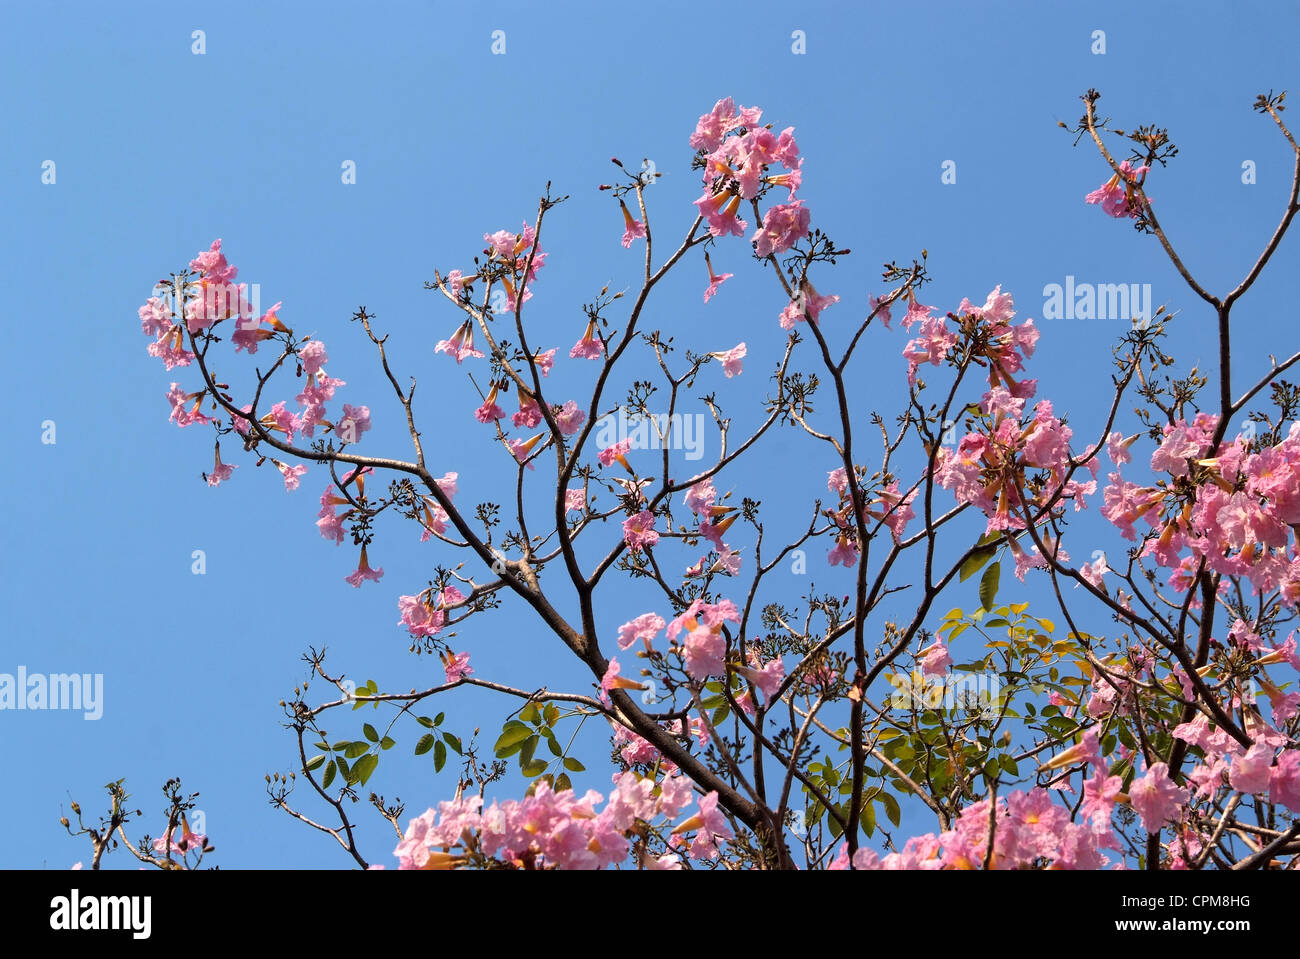 Tebebuia Flower(Pink trumpet) blooming in Spring season Stock Photo